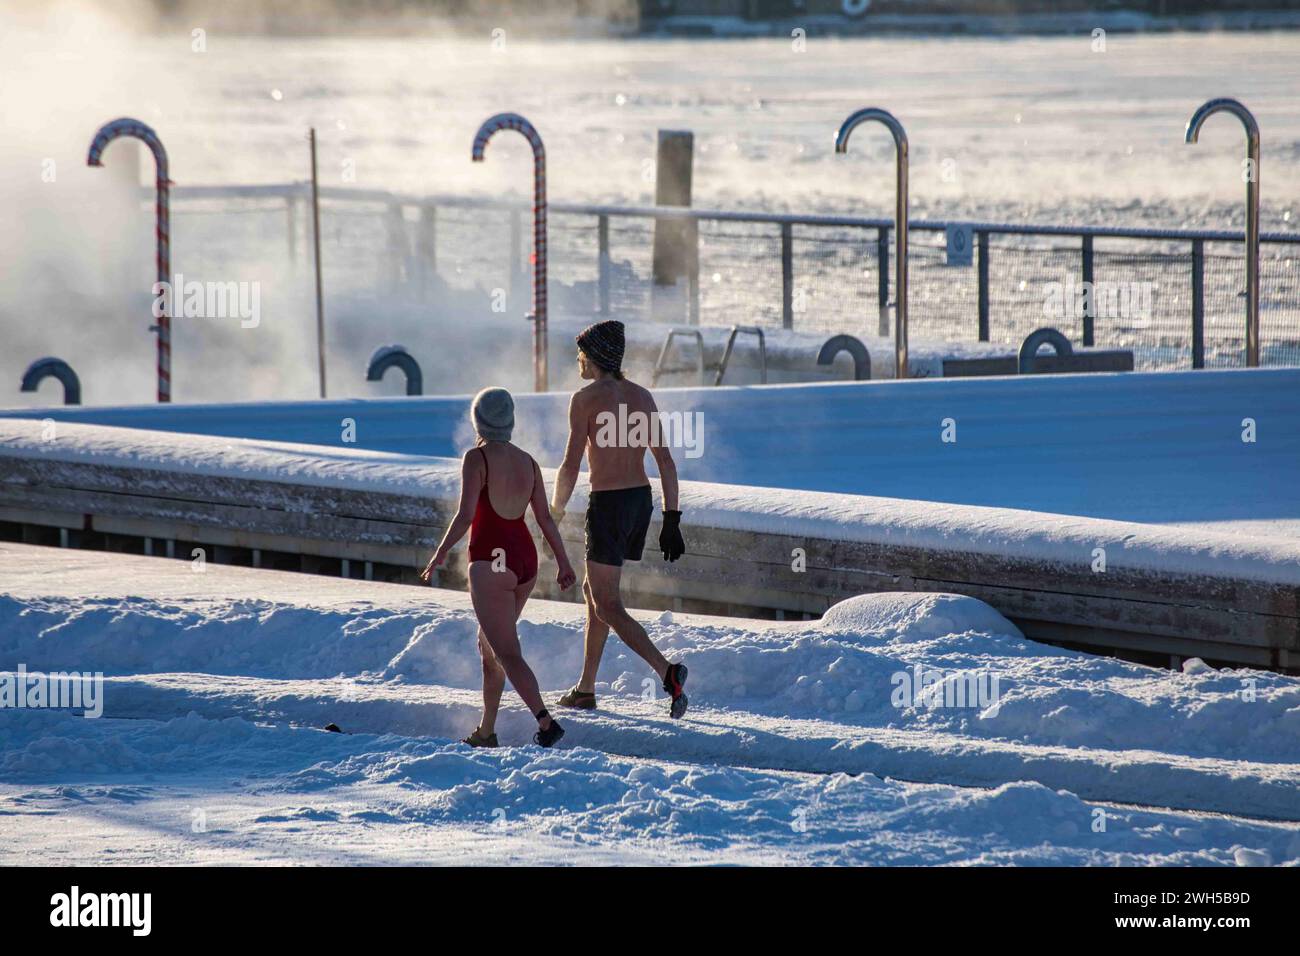 Un couple de vapeur se rafraîchissant après un sauna sur la terrasse couverte de neige de la piscine de la mer Allas lors d'une froide journée d'hiver à Helsinki, en Finlande Banque D'Images